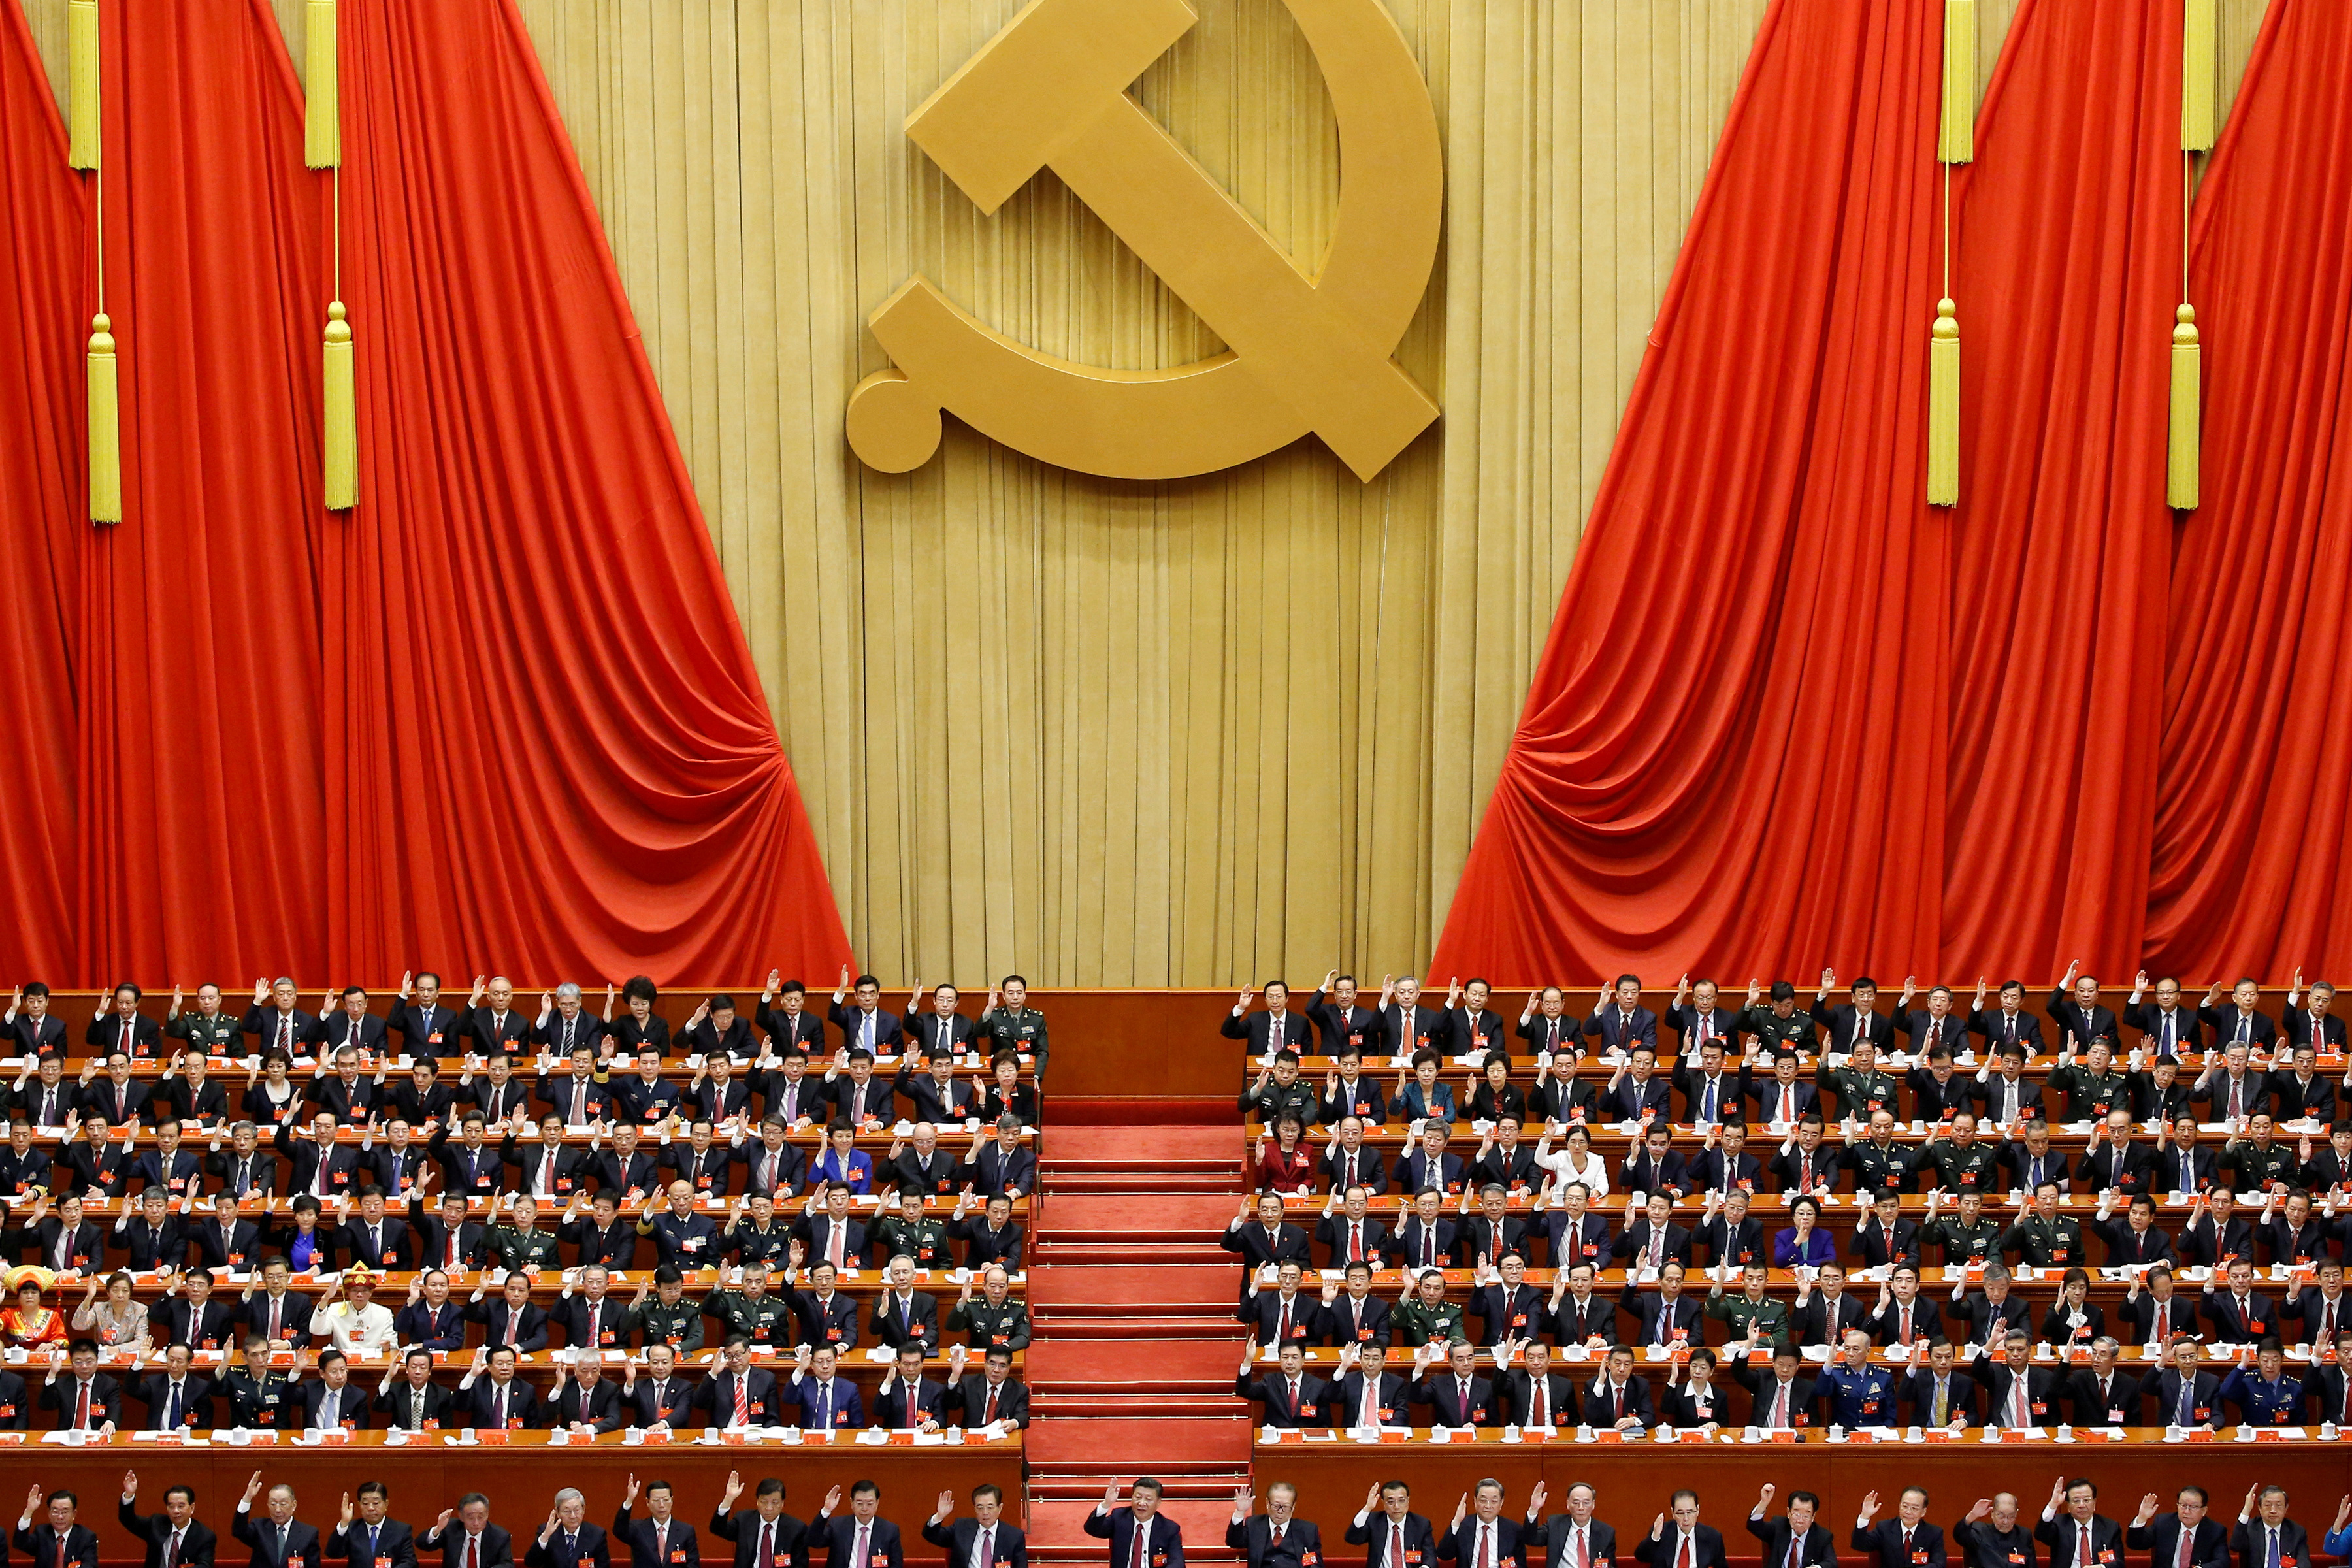 Con 96,7 millones de miembros, el Partido Comunista de China es una de las mayores organizaciones políticas del mundo (REUTERS/Thomas Peter/Archivo)